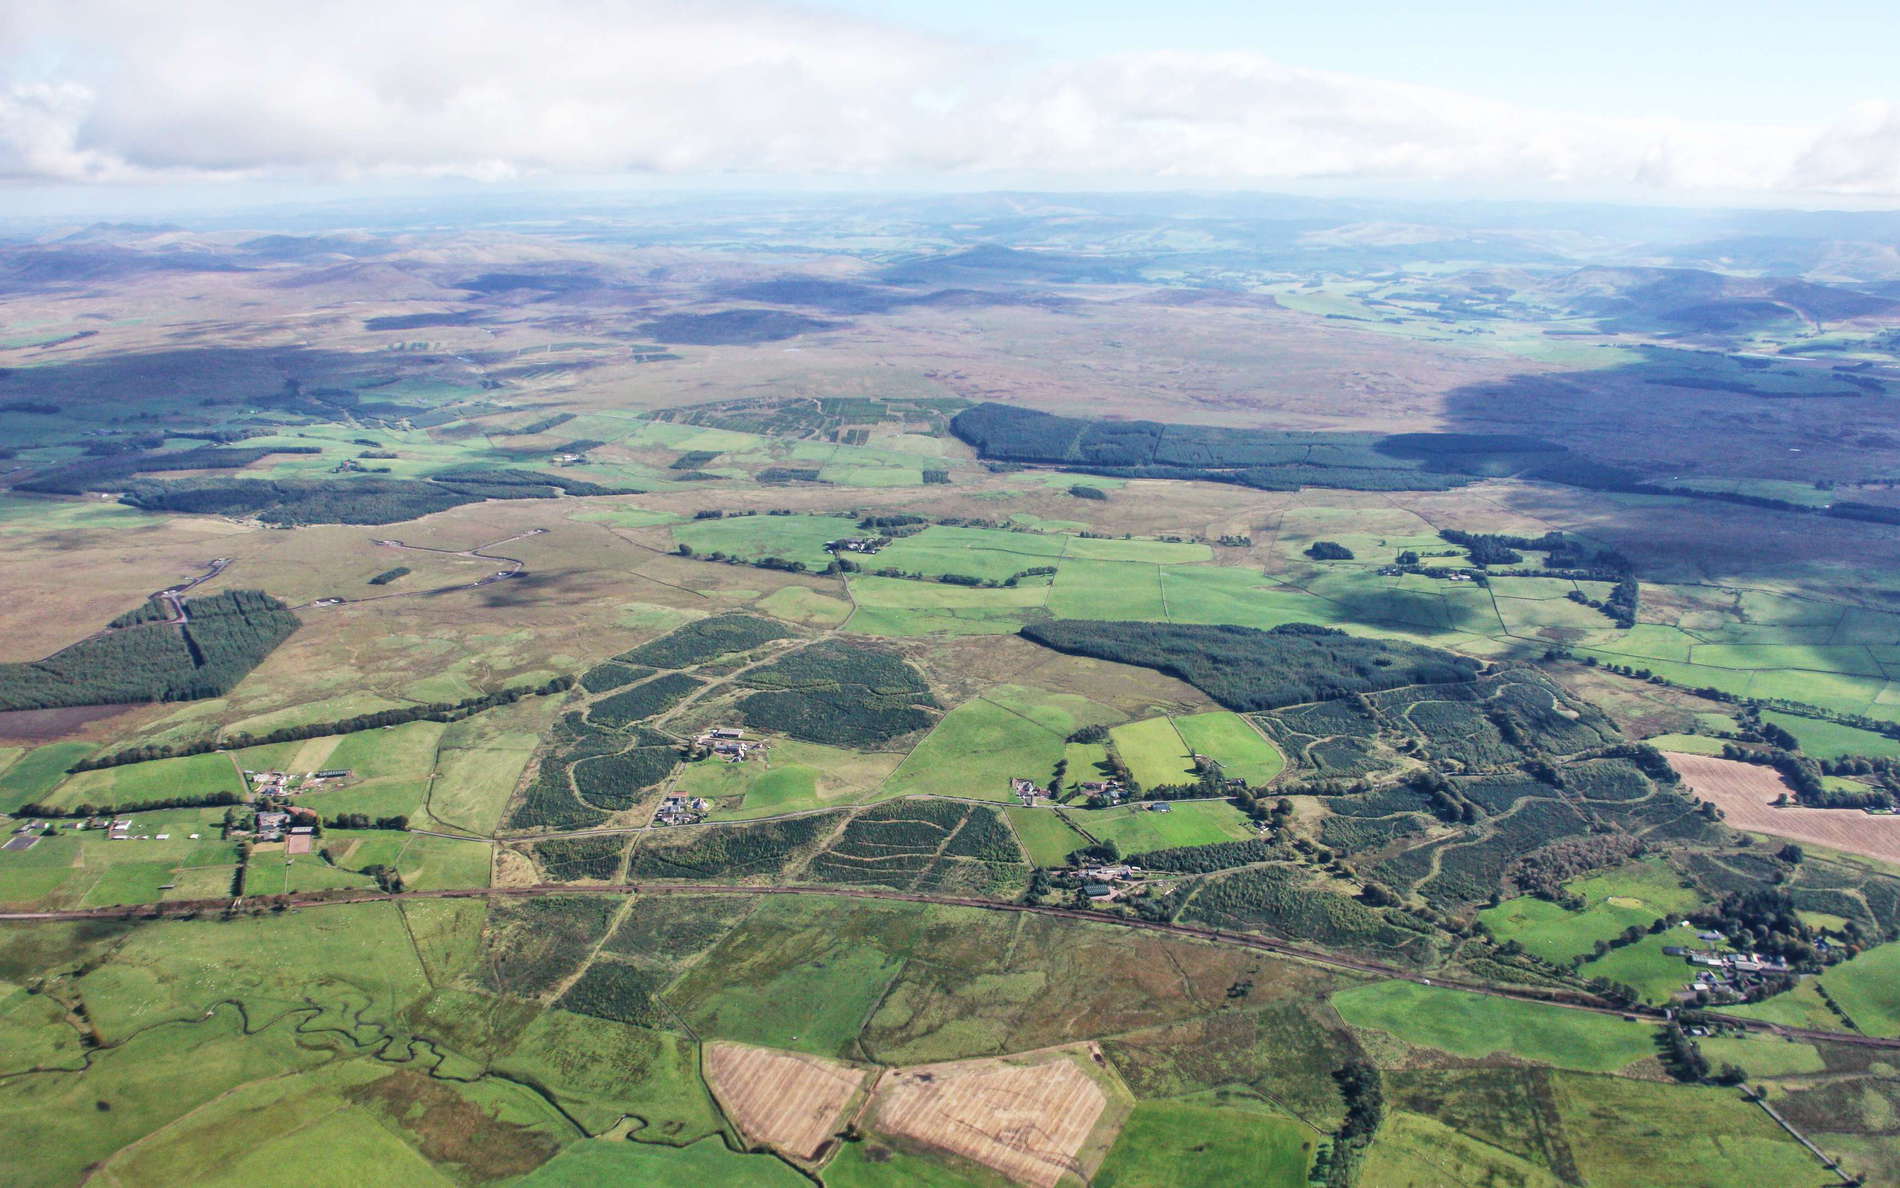 South Lanarkshire  |  Rural landscape